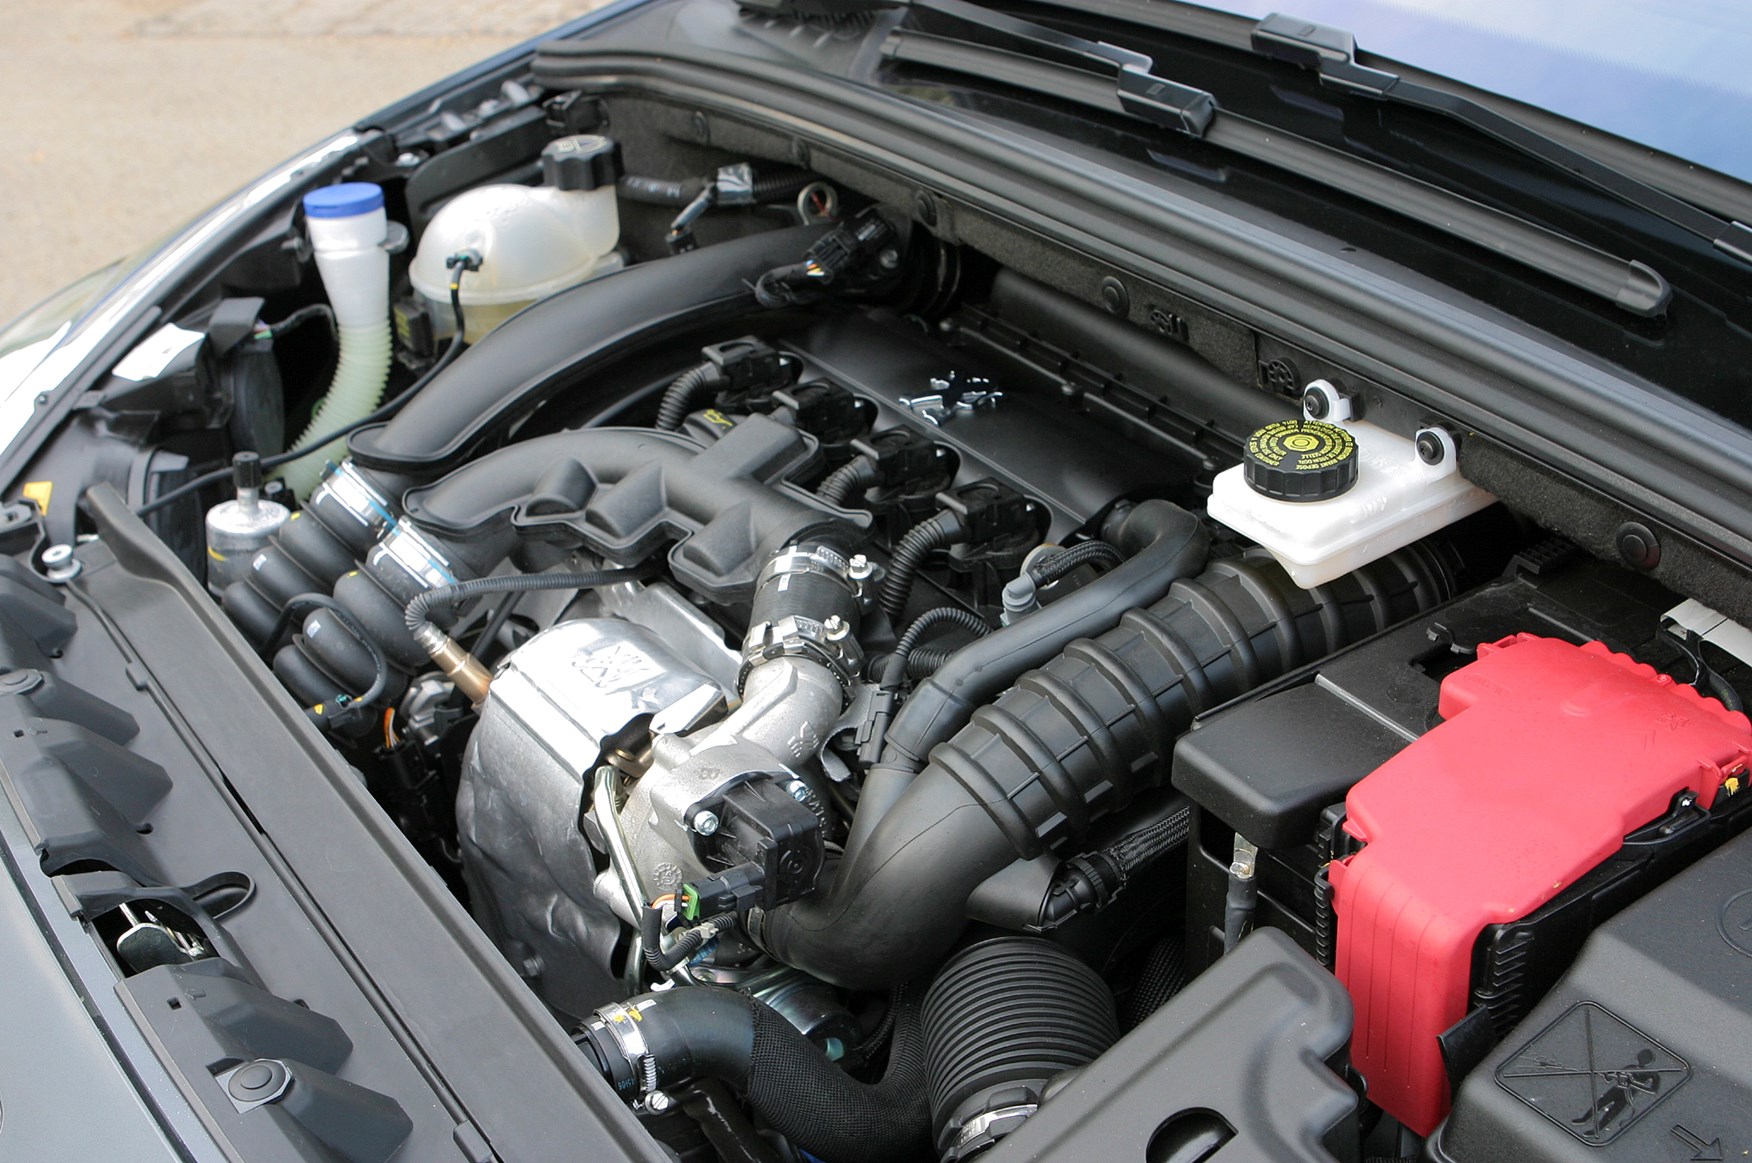 Peugeot 3008 двигатель. Пежо 308 1.6 турбо. Пежо 308 двигатель 1.6. Мотор Пежо 308 1.6 120 л.с. Двигатель Пежо 3008 1.6 турбо.